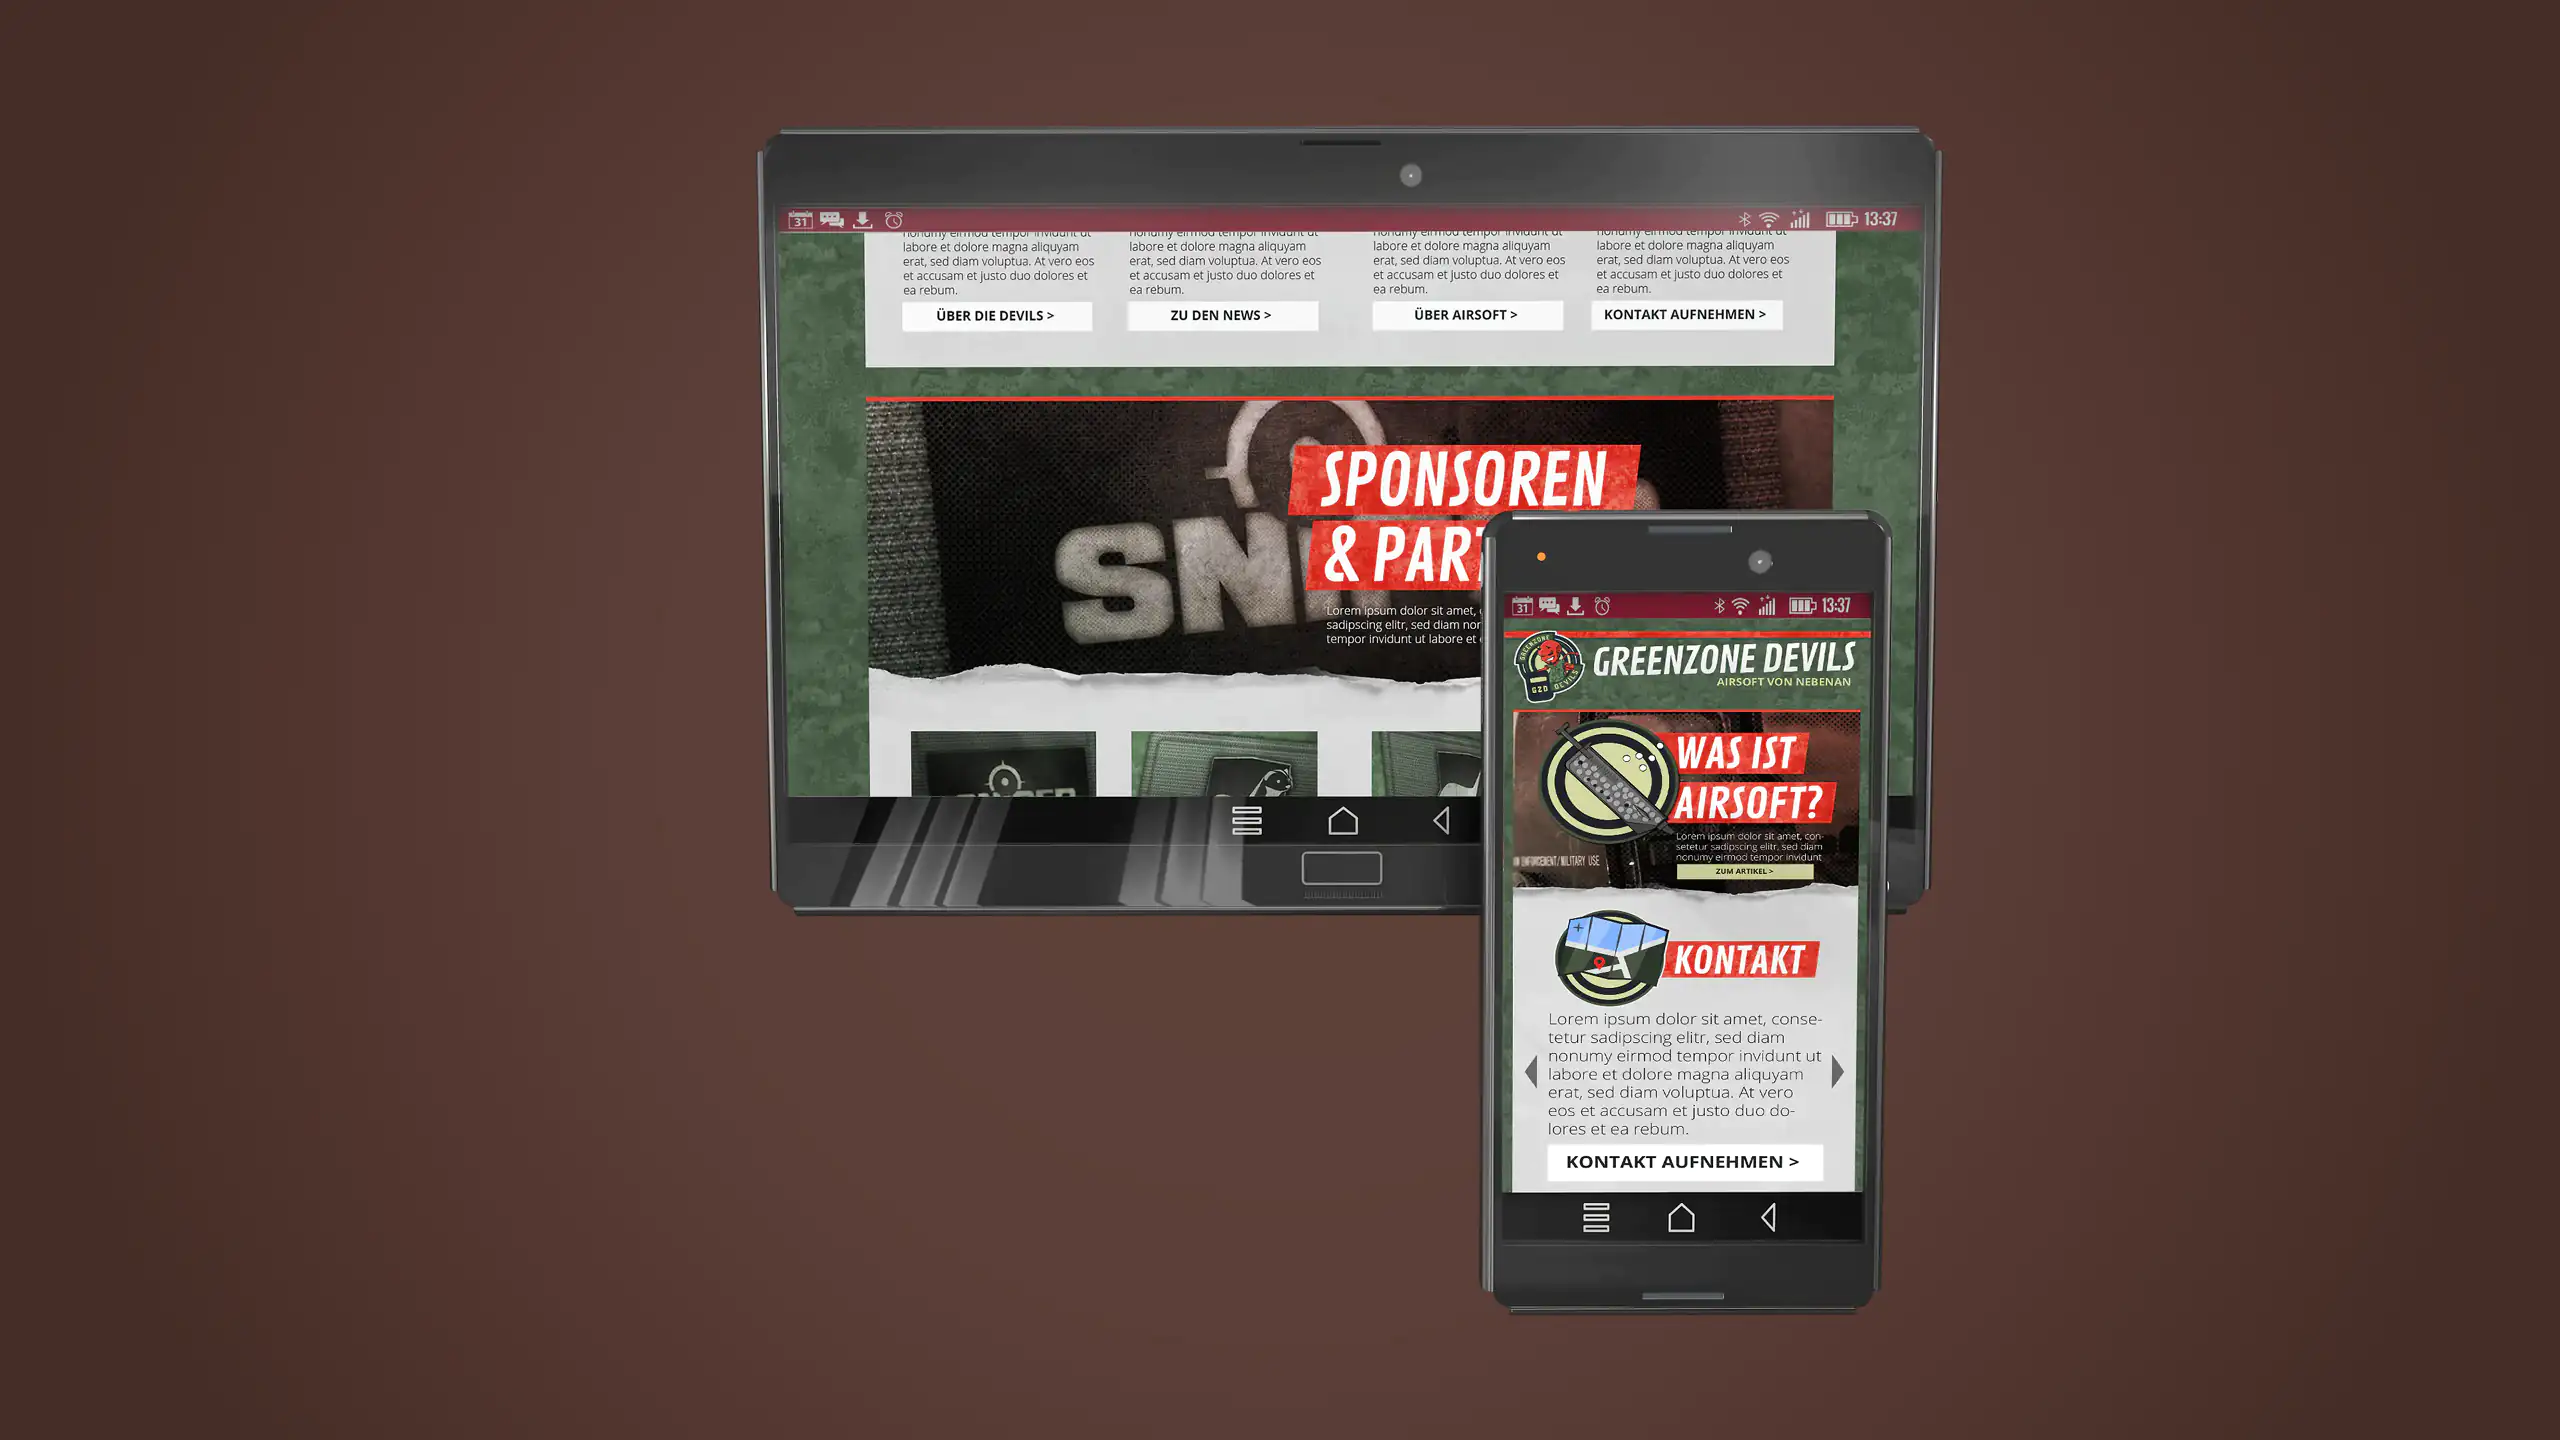 3D-Mockup eines Tablets und eines Smartphones mit der Seite des Airsoft-Teams Greenzone Devils auf braunem Hintergrund